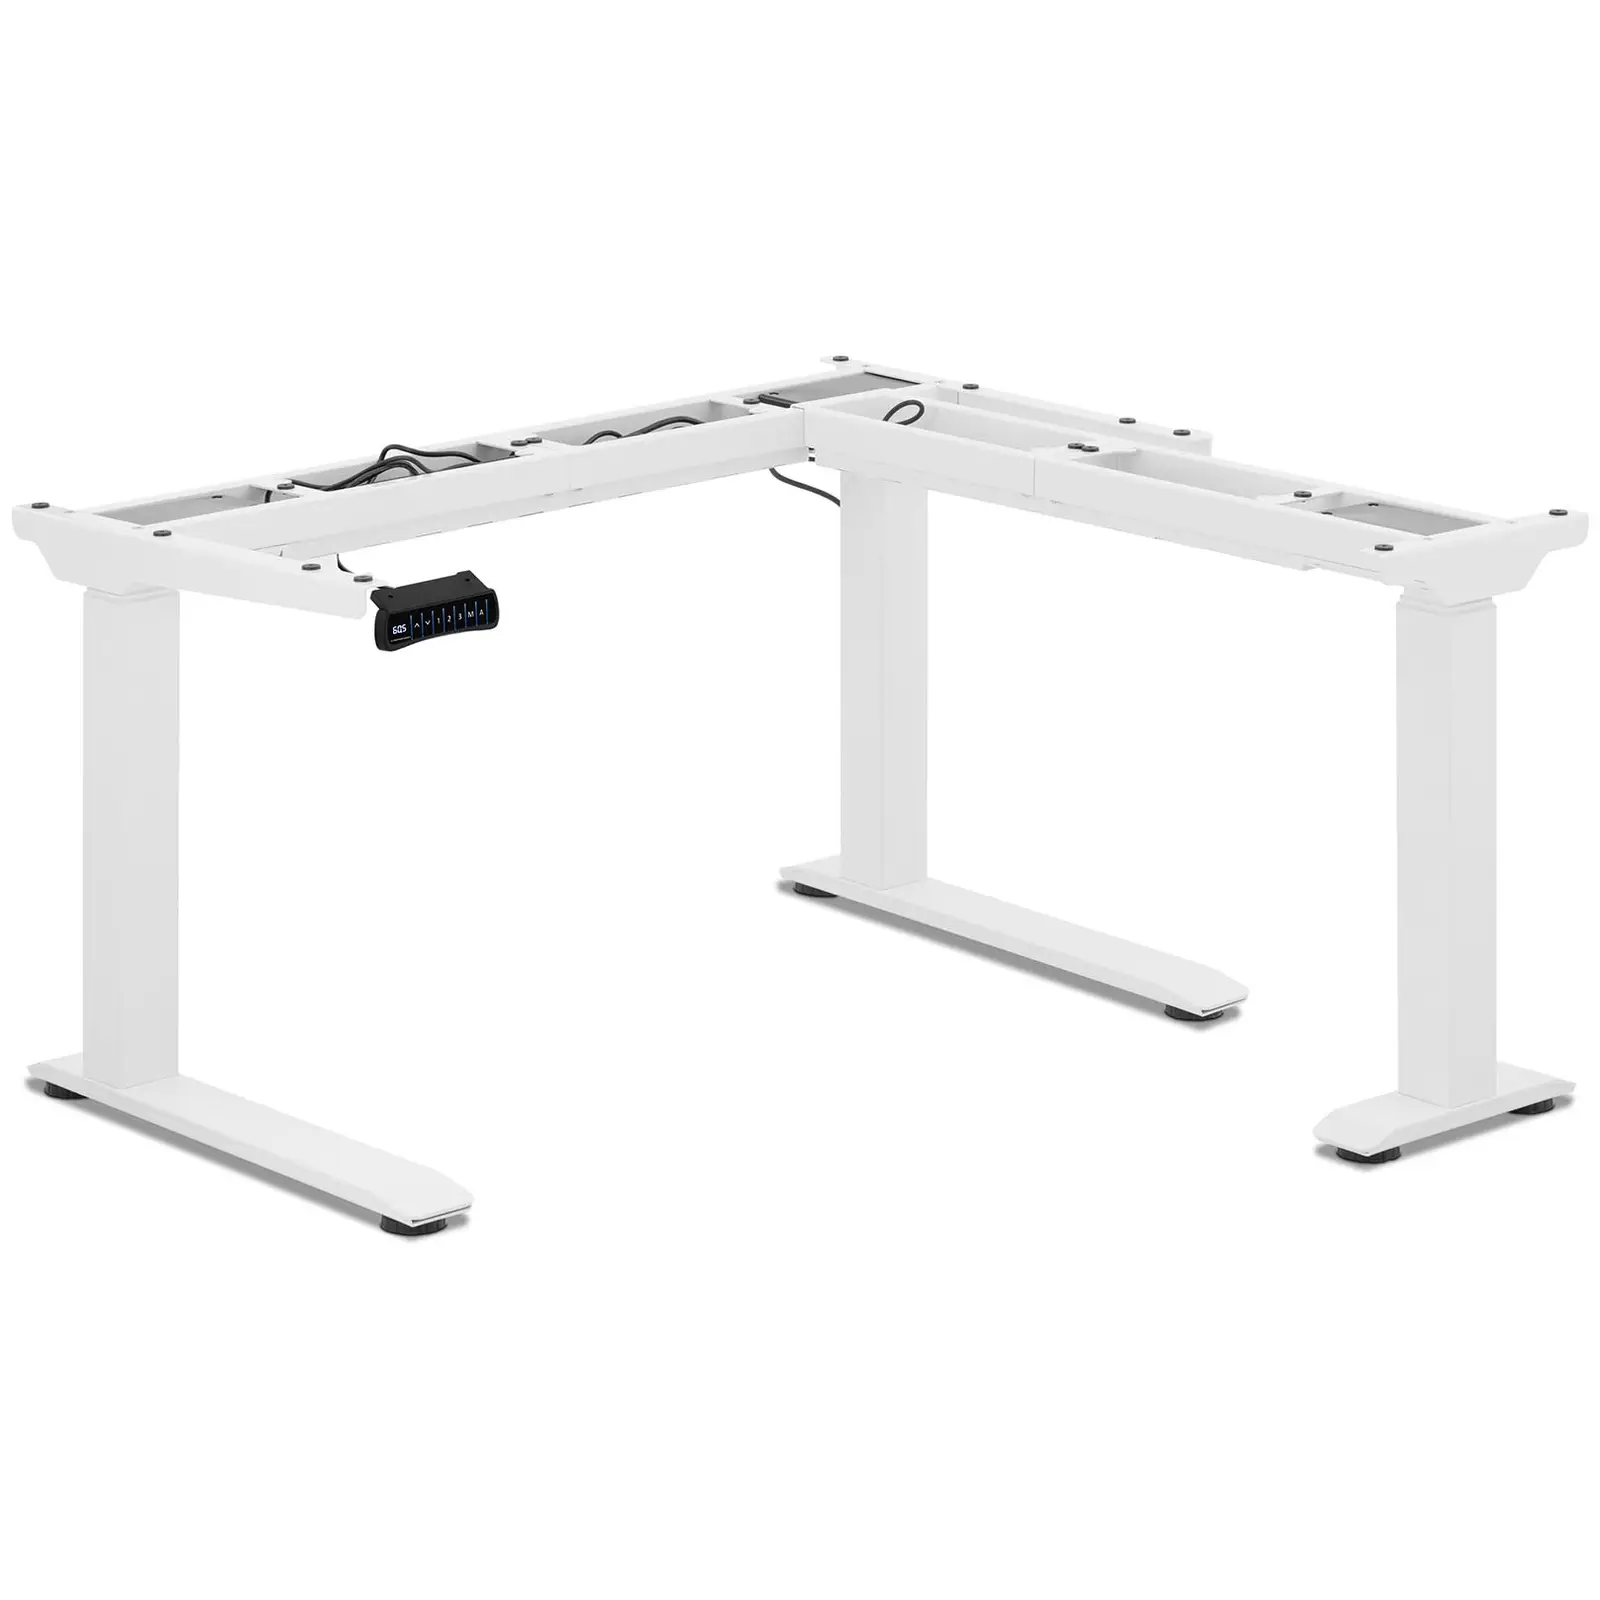 Bastidor para mesa de esquina con ajuste de altura - altura: 60 - 125 cm - ancho: 110 - 190 cm (izda.) / 90 - 150 cm (dcha.)